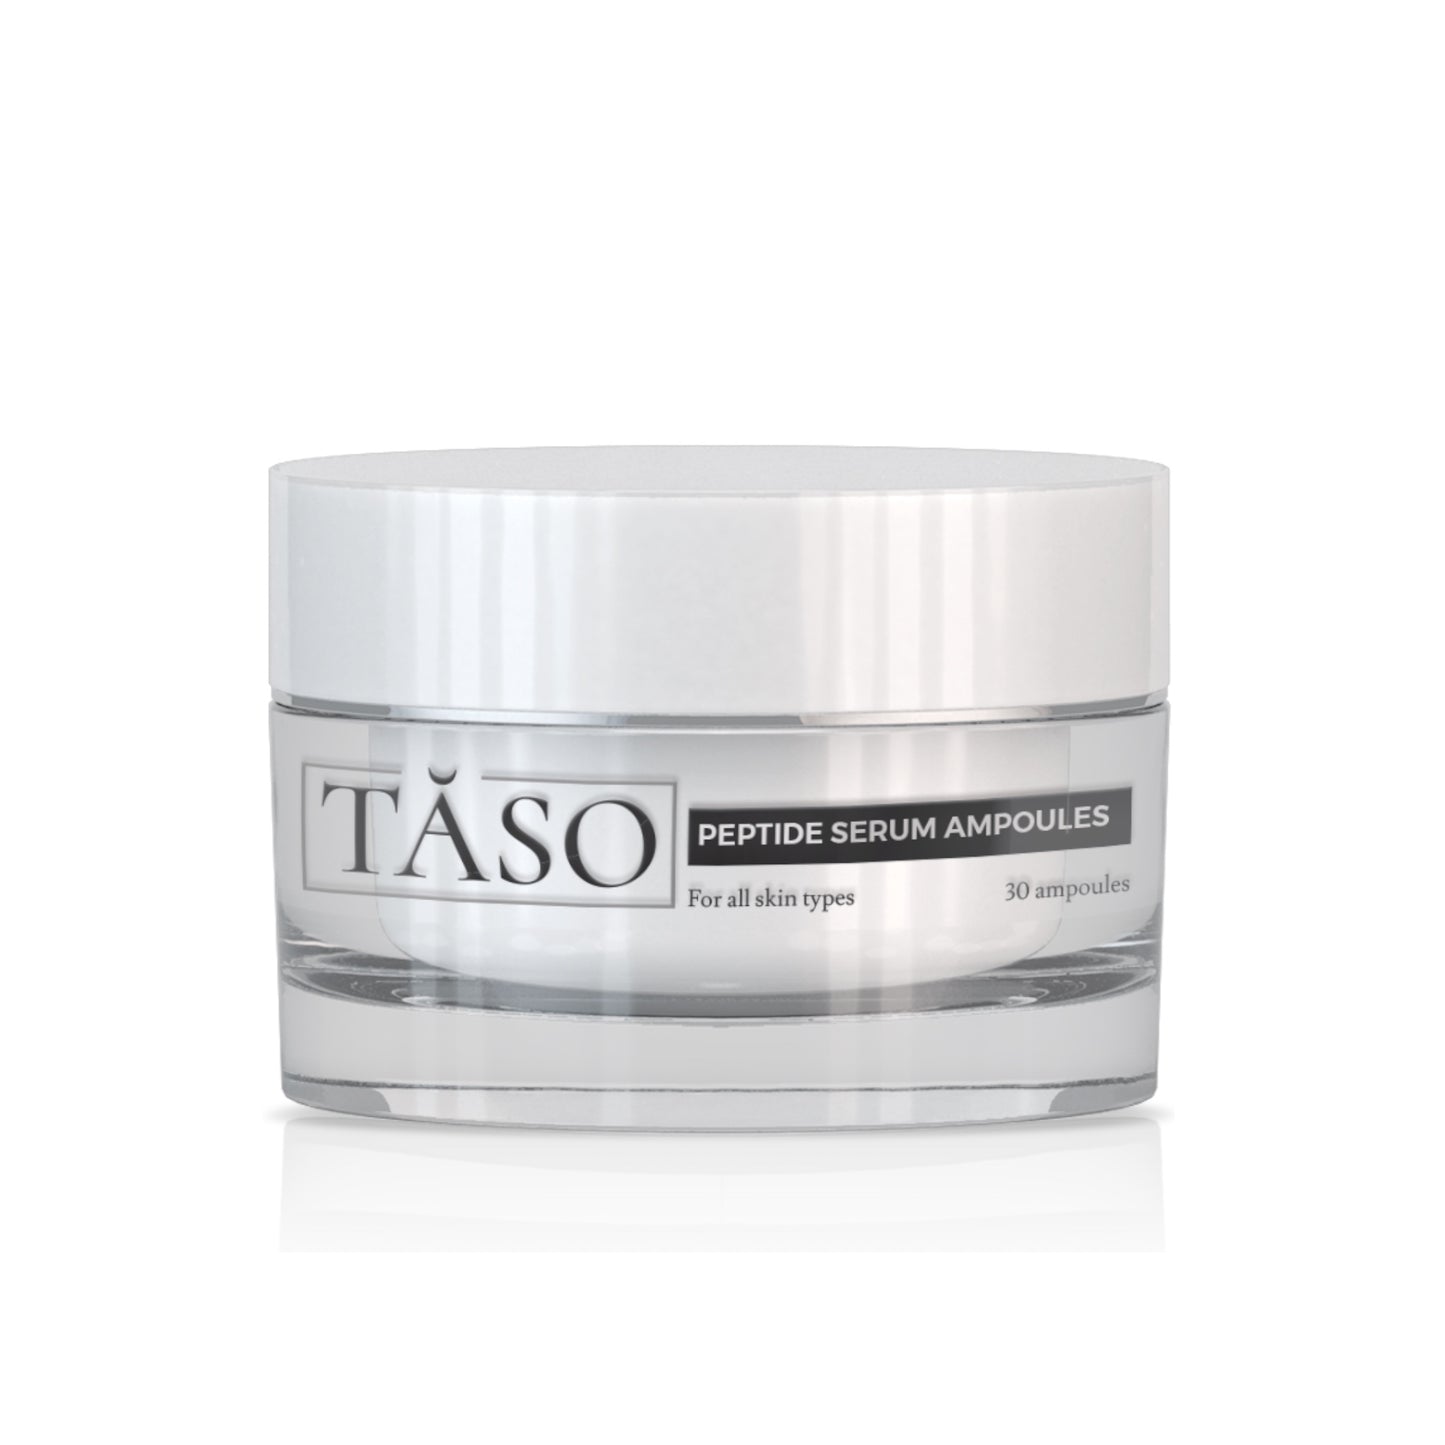 TASO Peptide Serum Ampoules